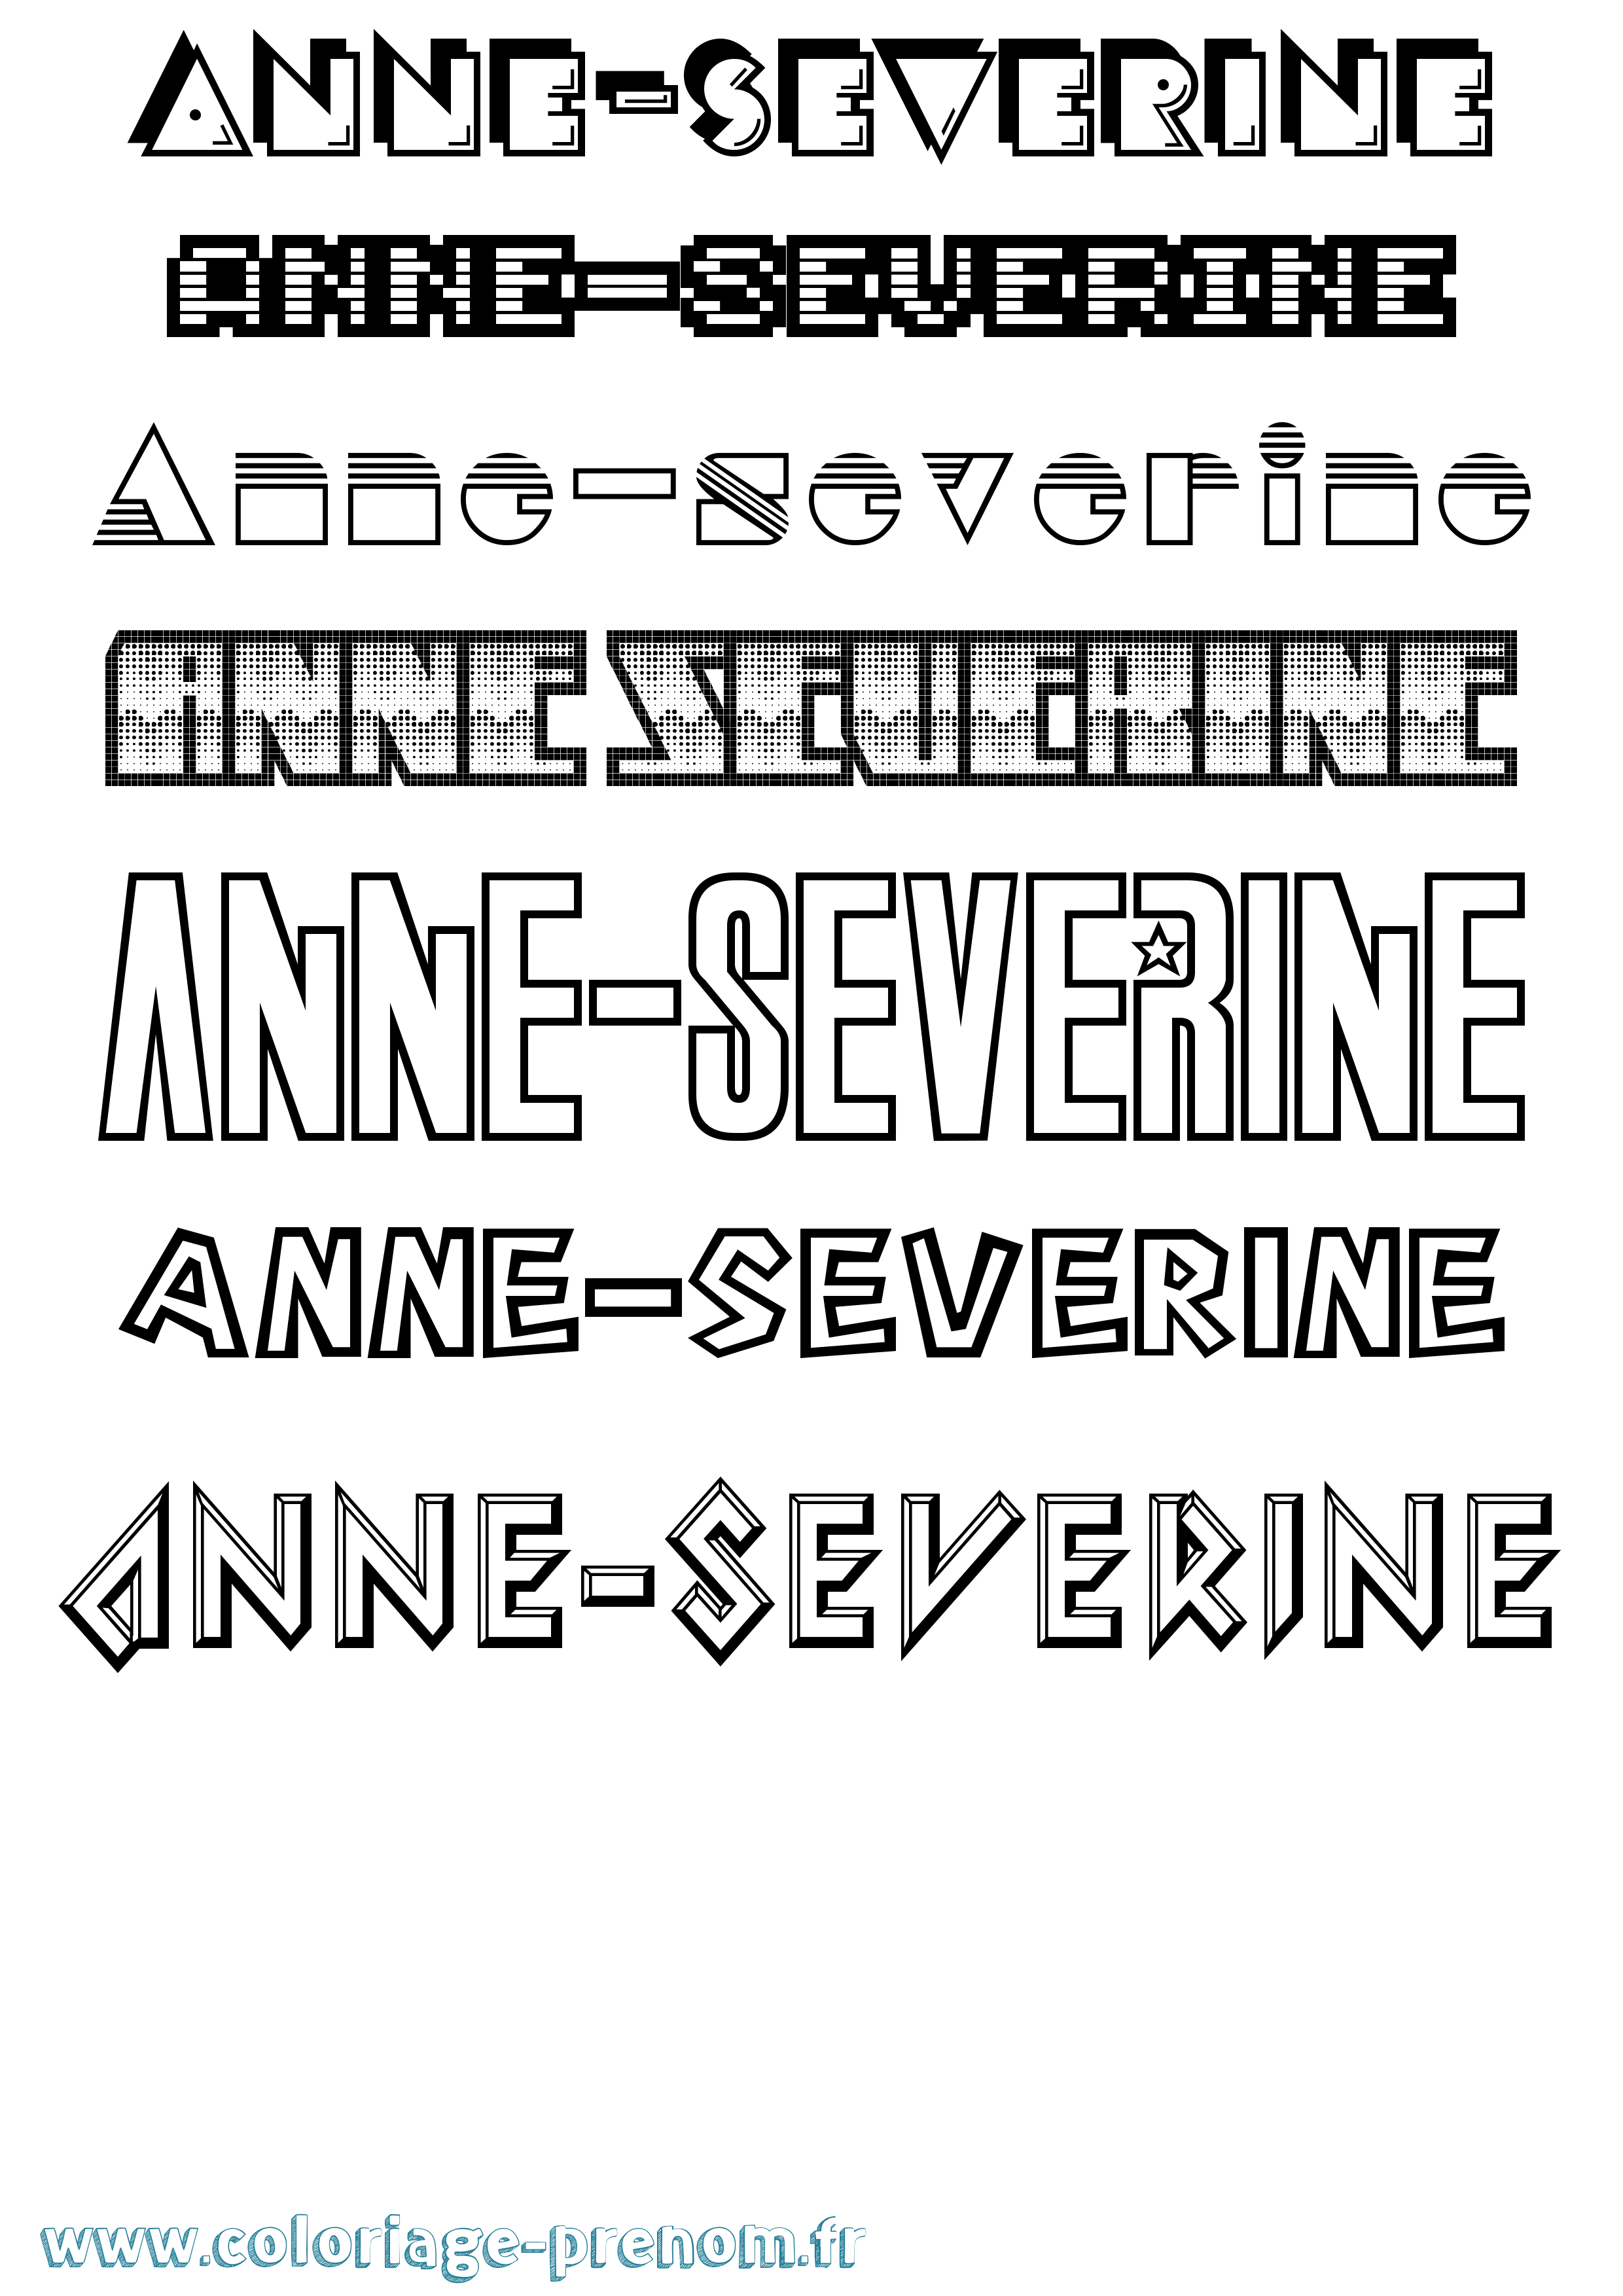 Coloriage prénom Anne-Severine Jeux Vidéos